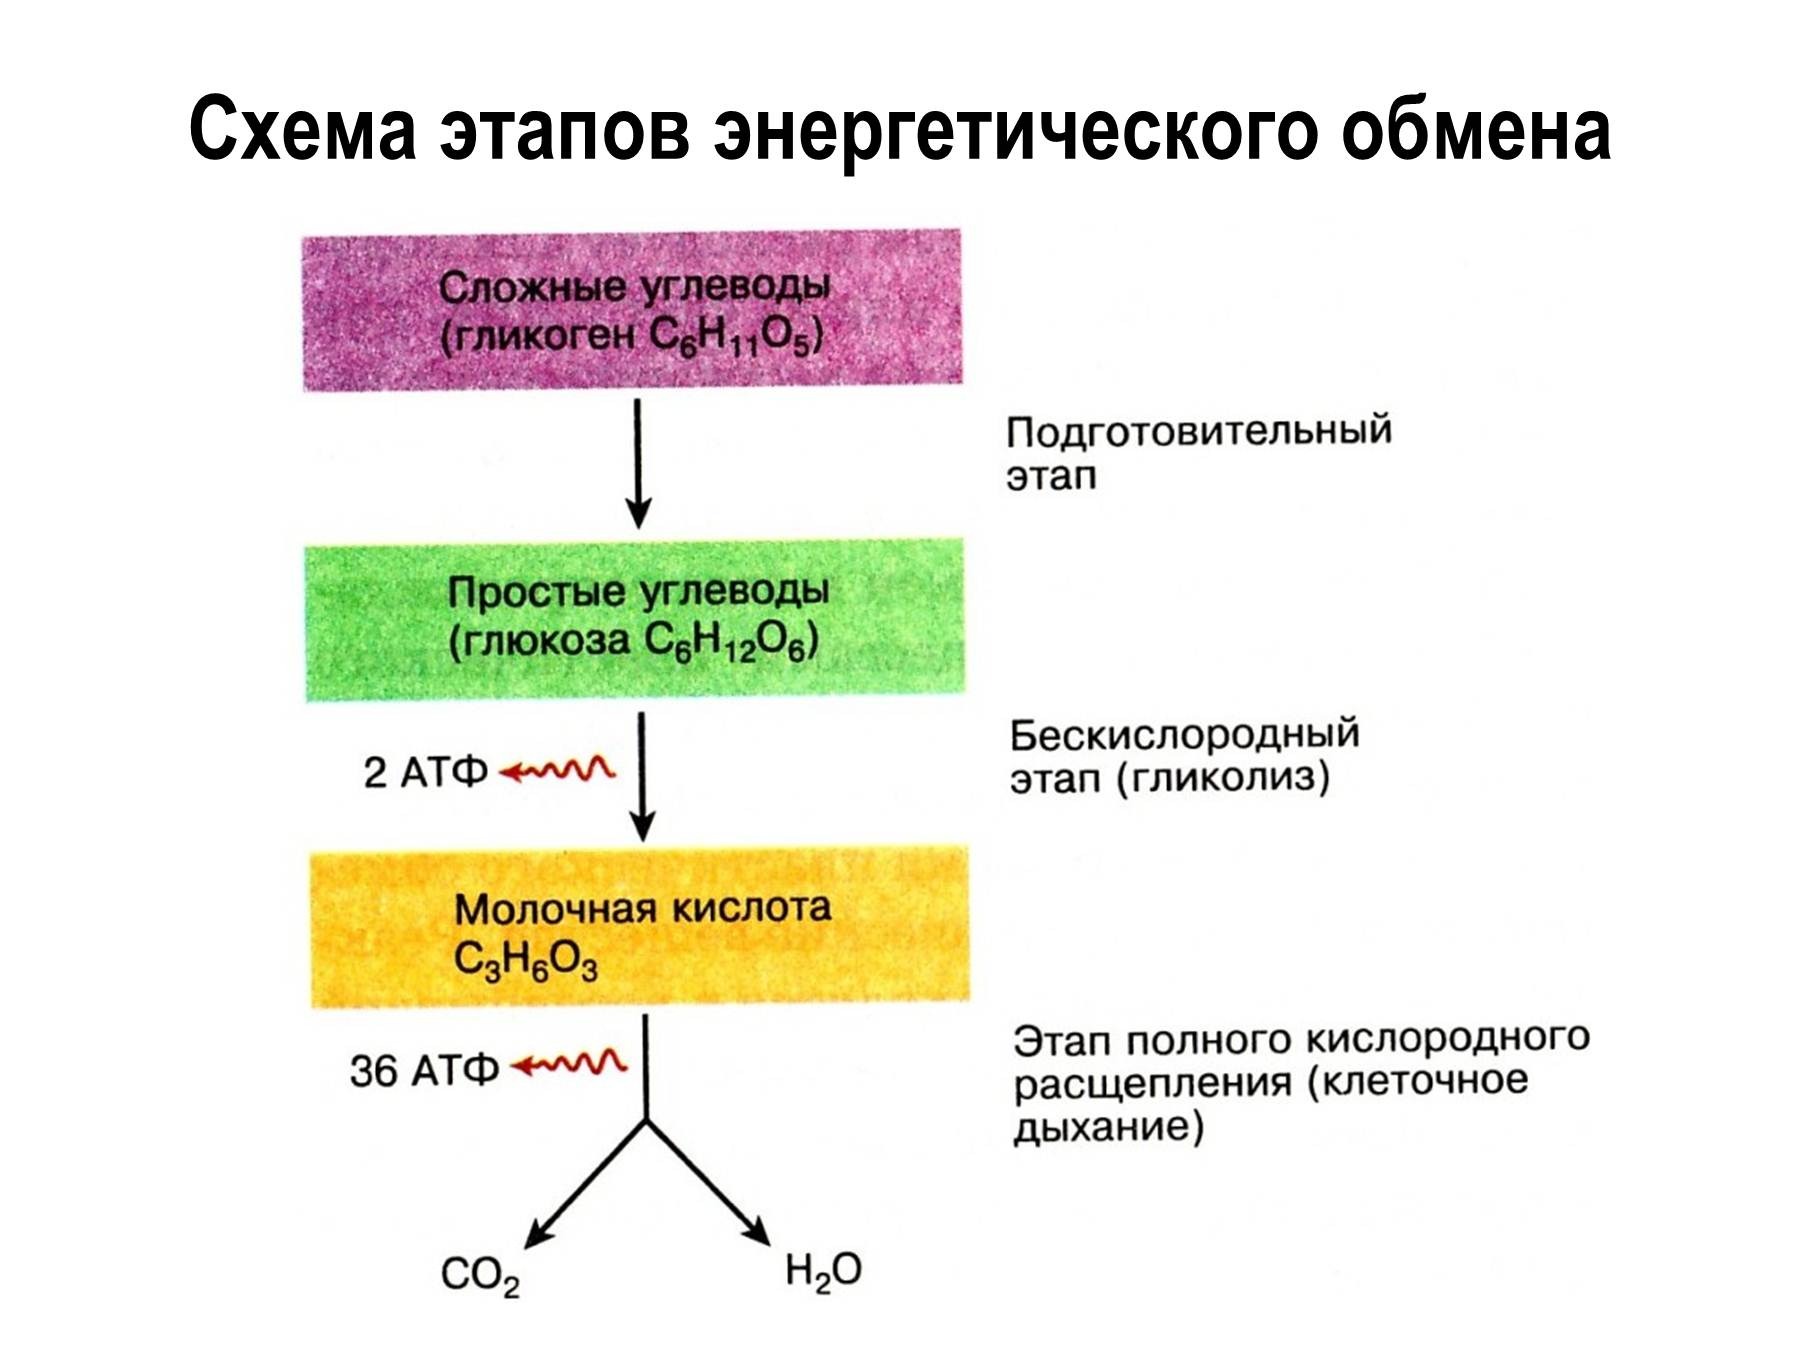 Атф синтезируется при окислении. Этапы энергия обмена веществ схема. Охарактеризуйте этапы энергетического обмена..